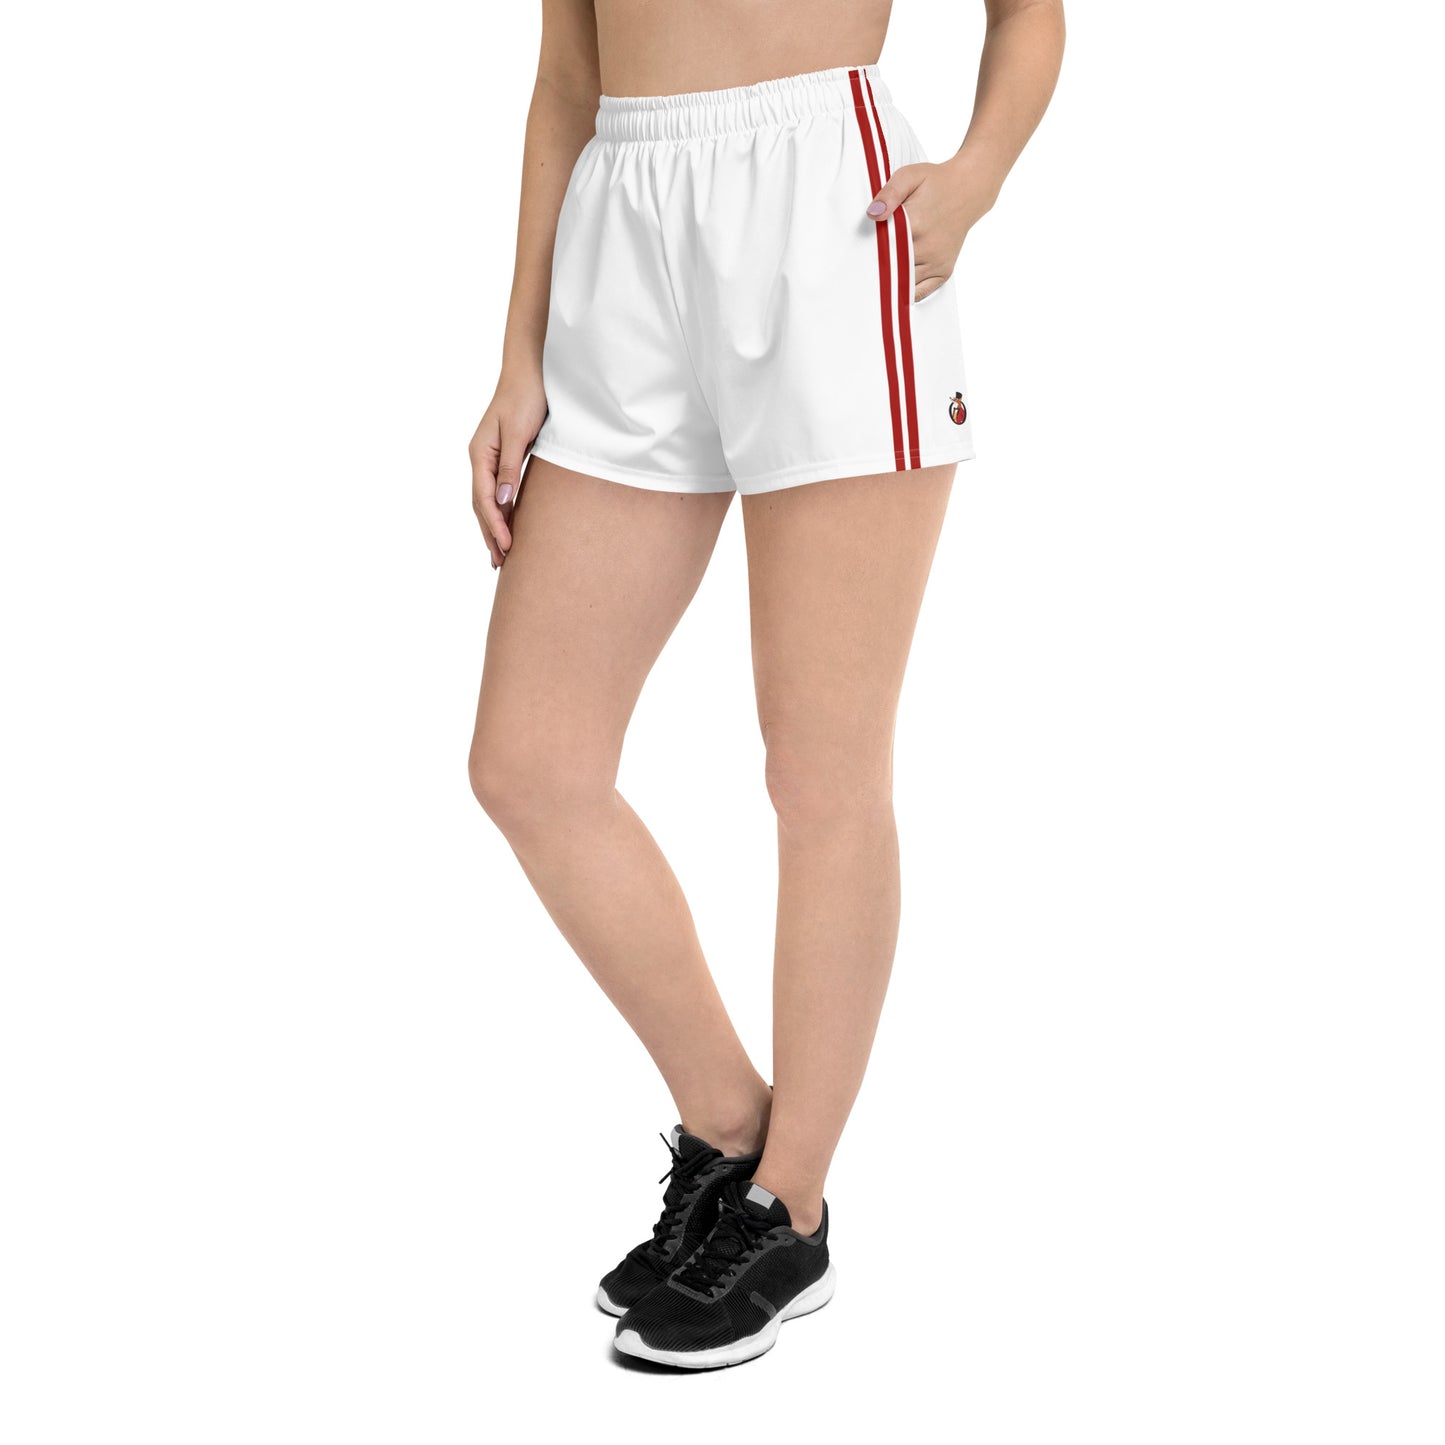 Snooty Fox Art Women’s Athletic Shorts - Sweet Heart